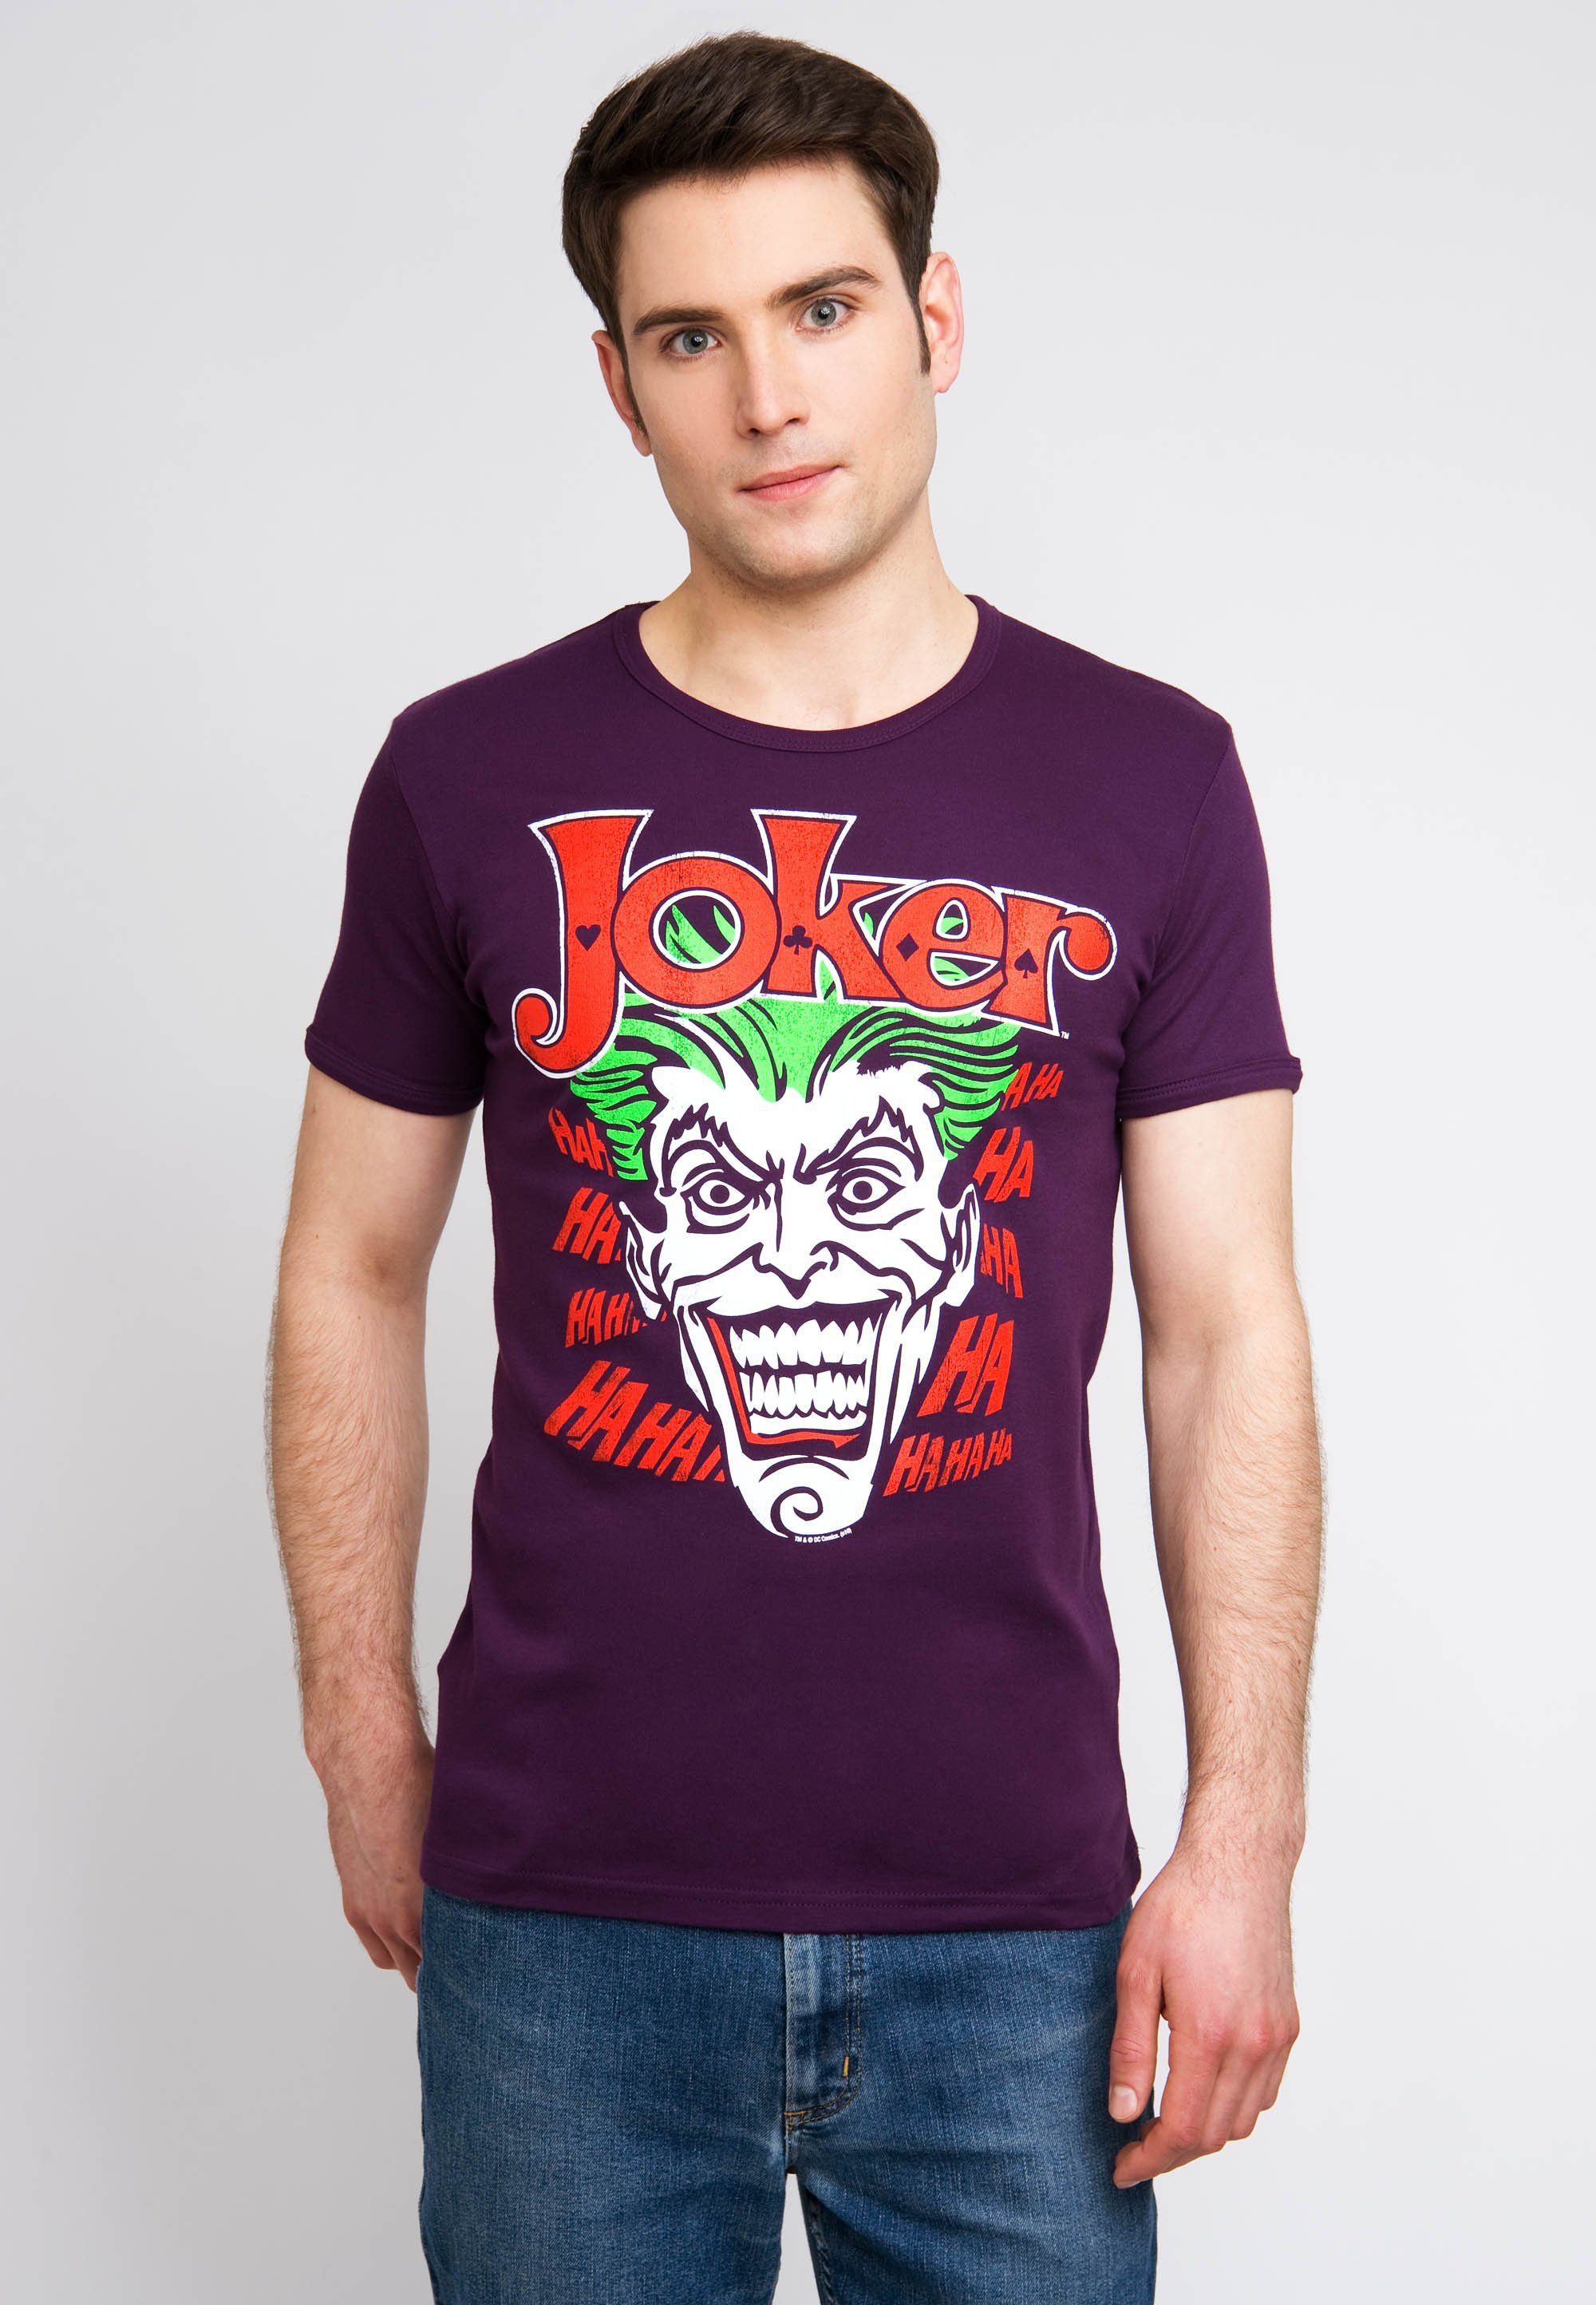 Top-Produktionsqualität Joker-Print mit T-Shirt Batman kultigem Joker bunt LOGOSHIRT